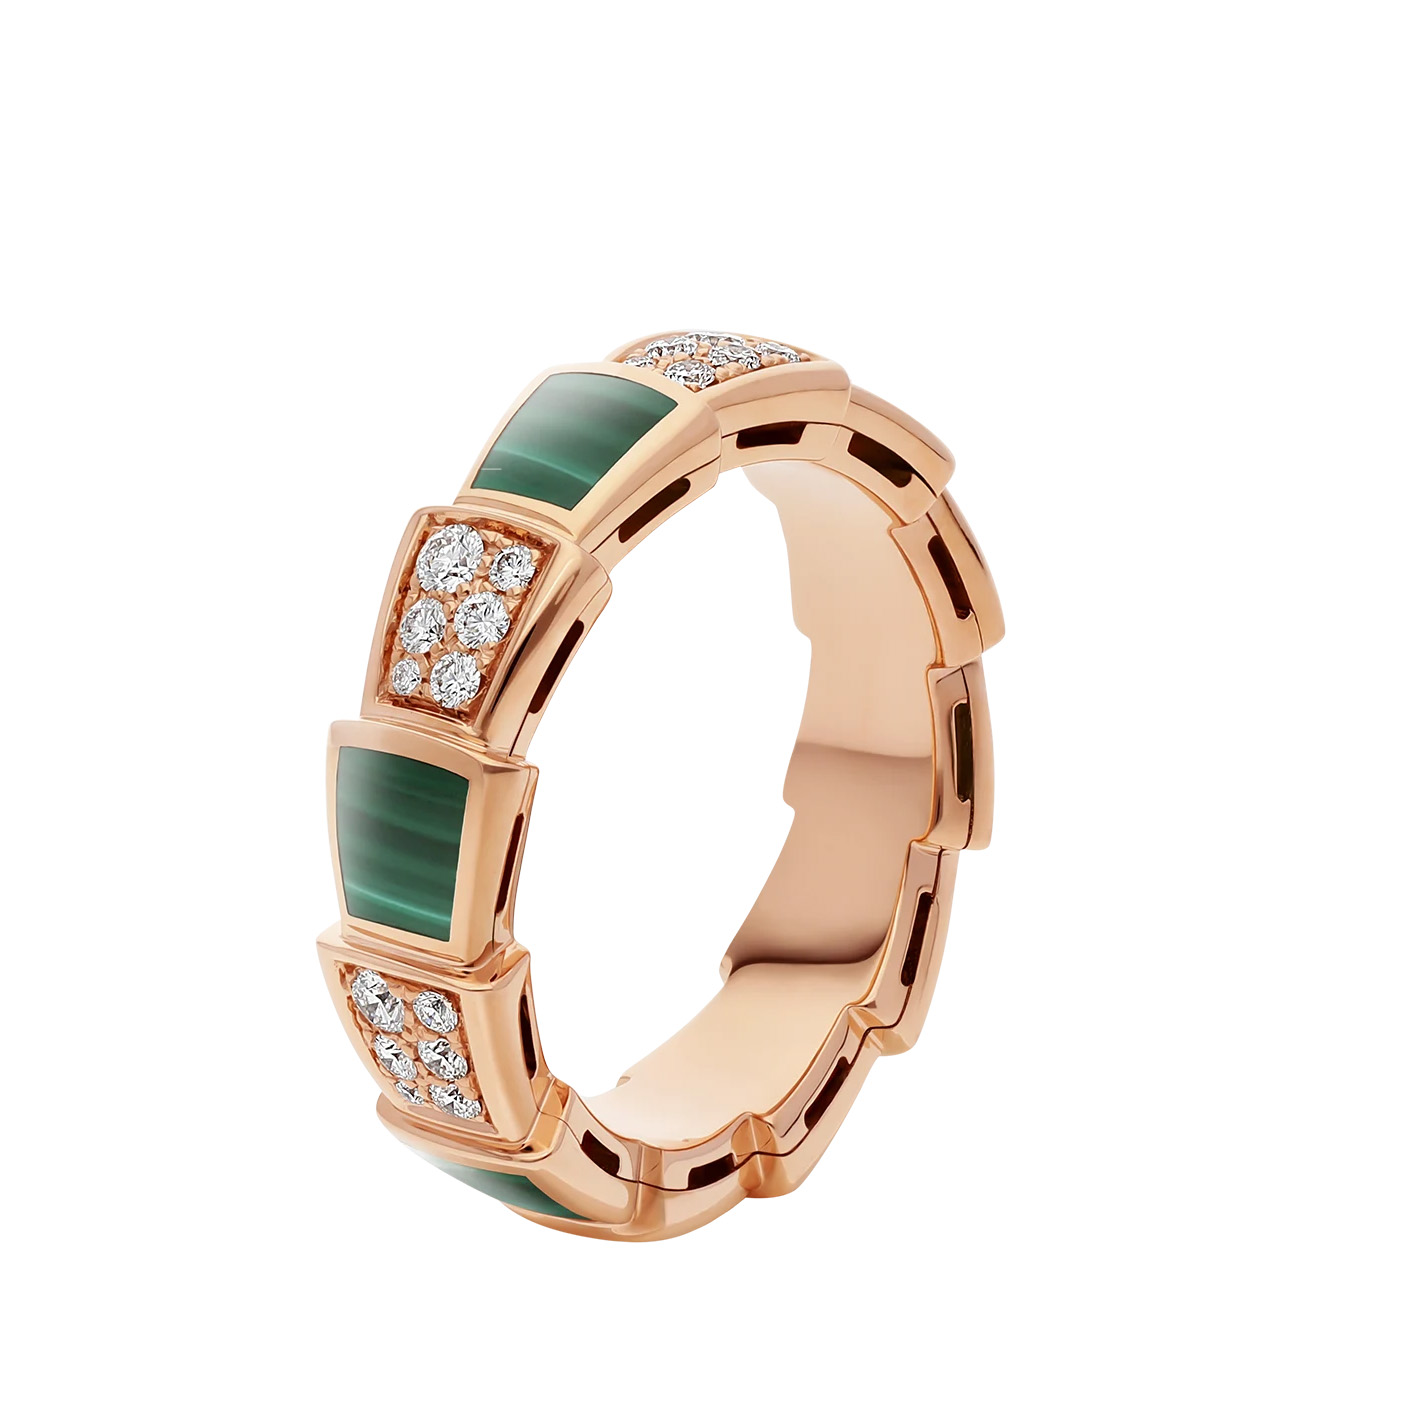 Grossist OEM design 18k roséguld ring med malakitelement OEM/ODM smycken och pavédiamanter